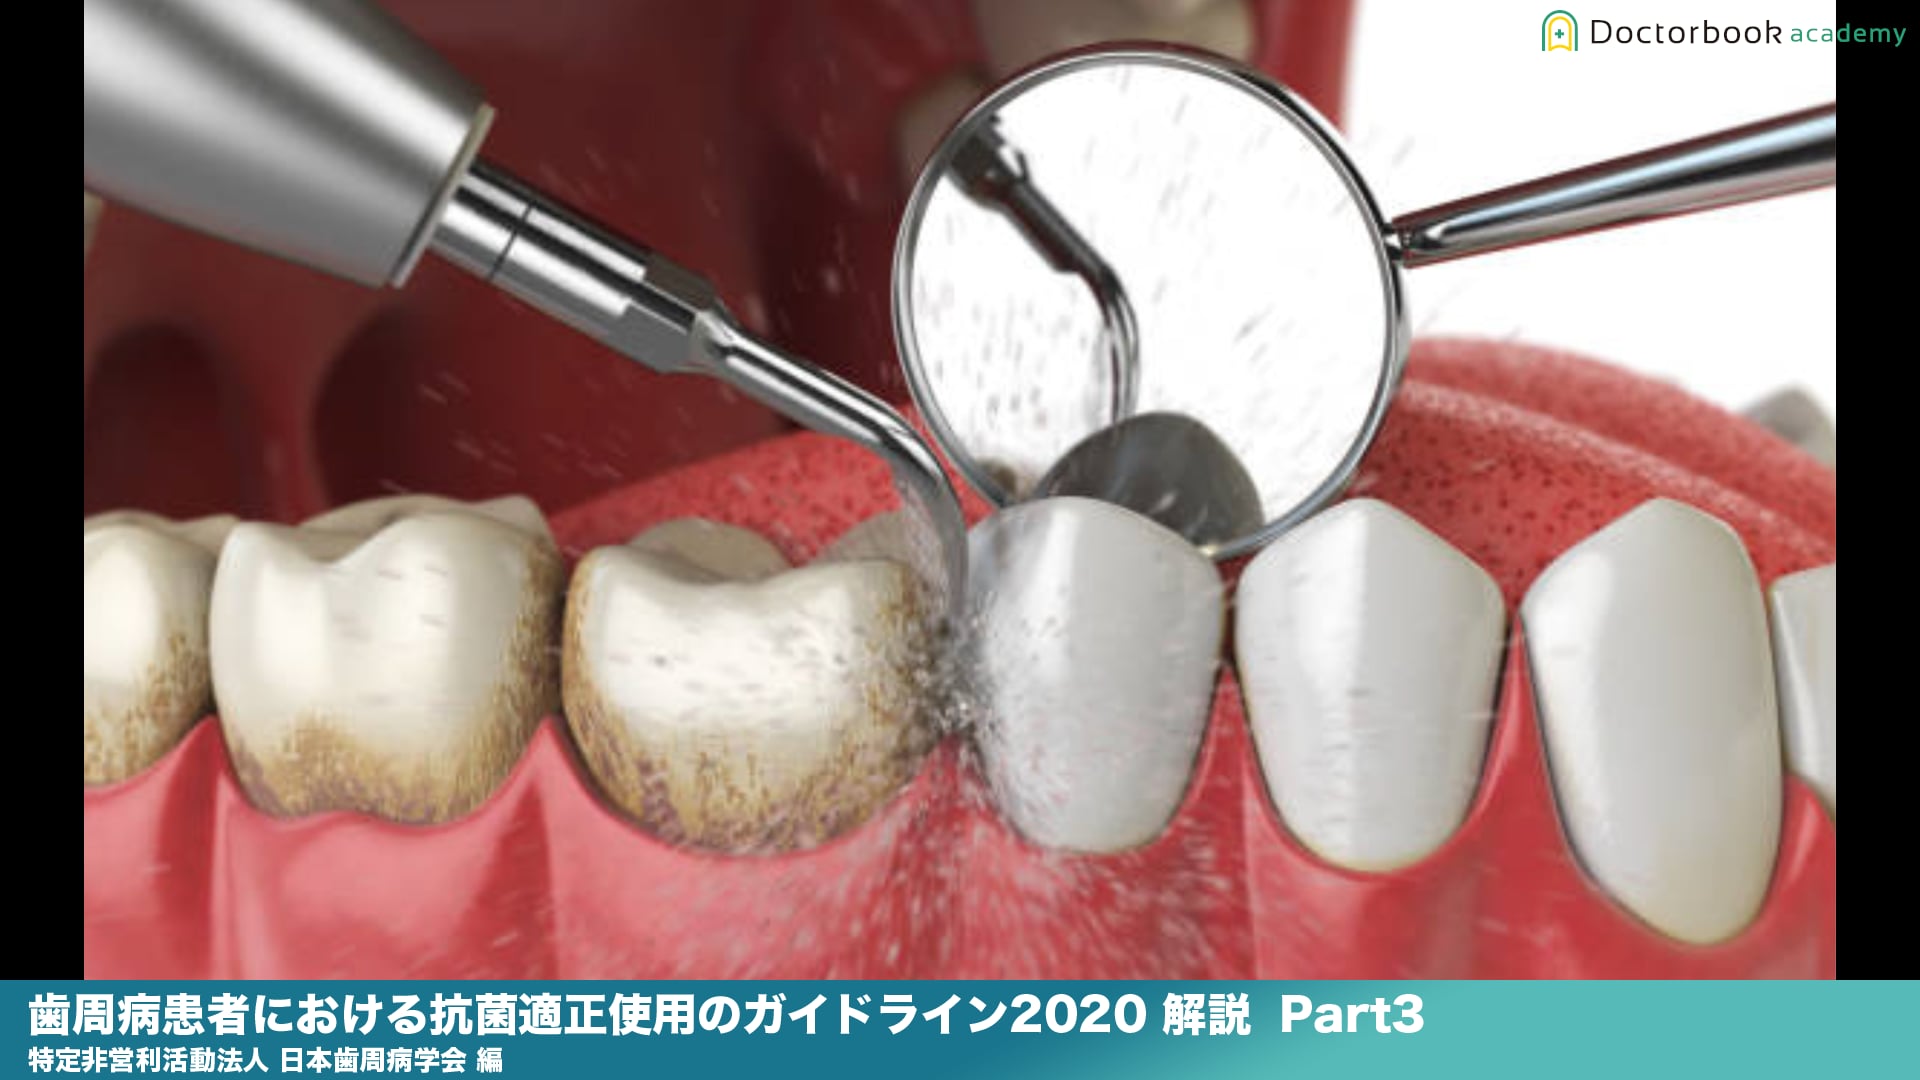 『歯周病患者における抗菌薬適正使用のガイドライン2020 』解説 Part3 